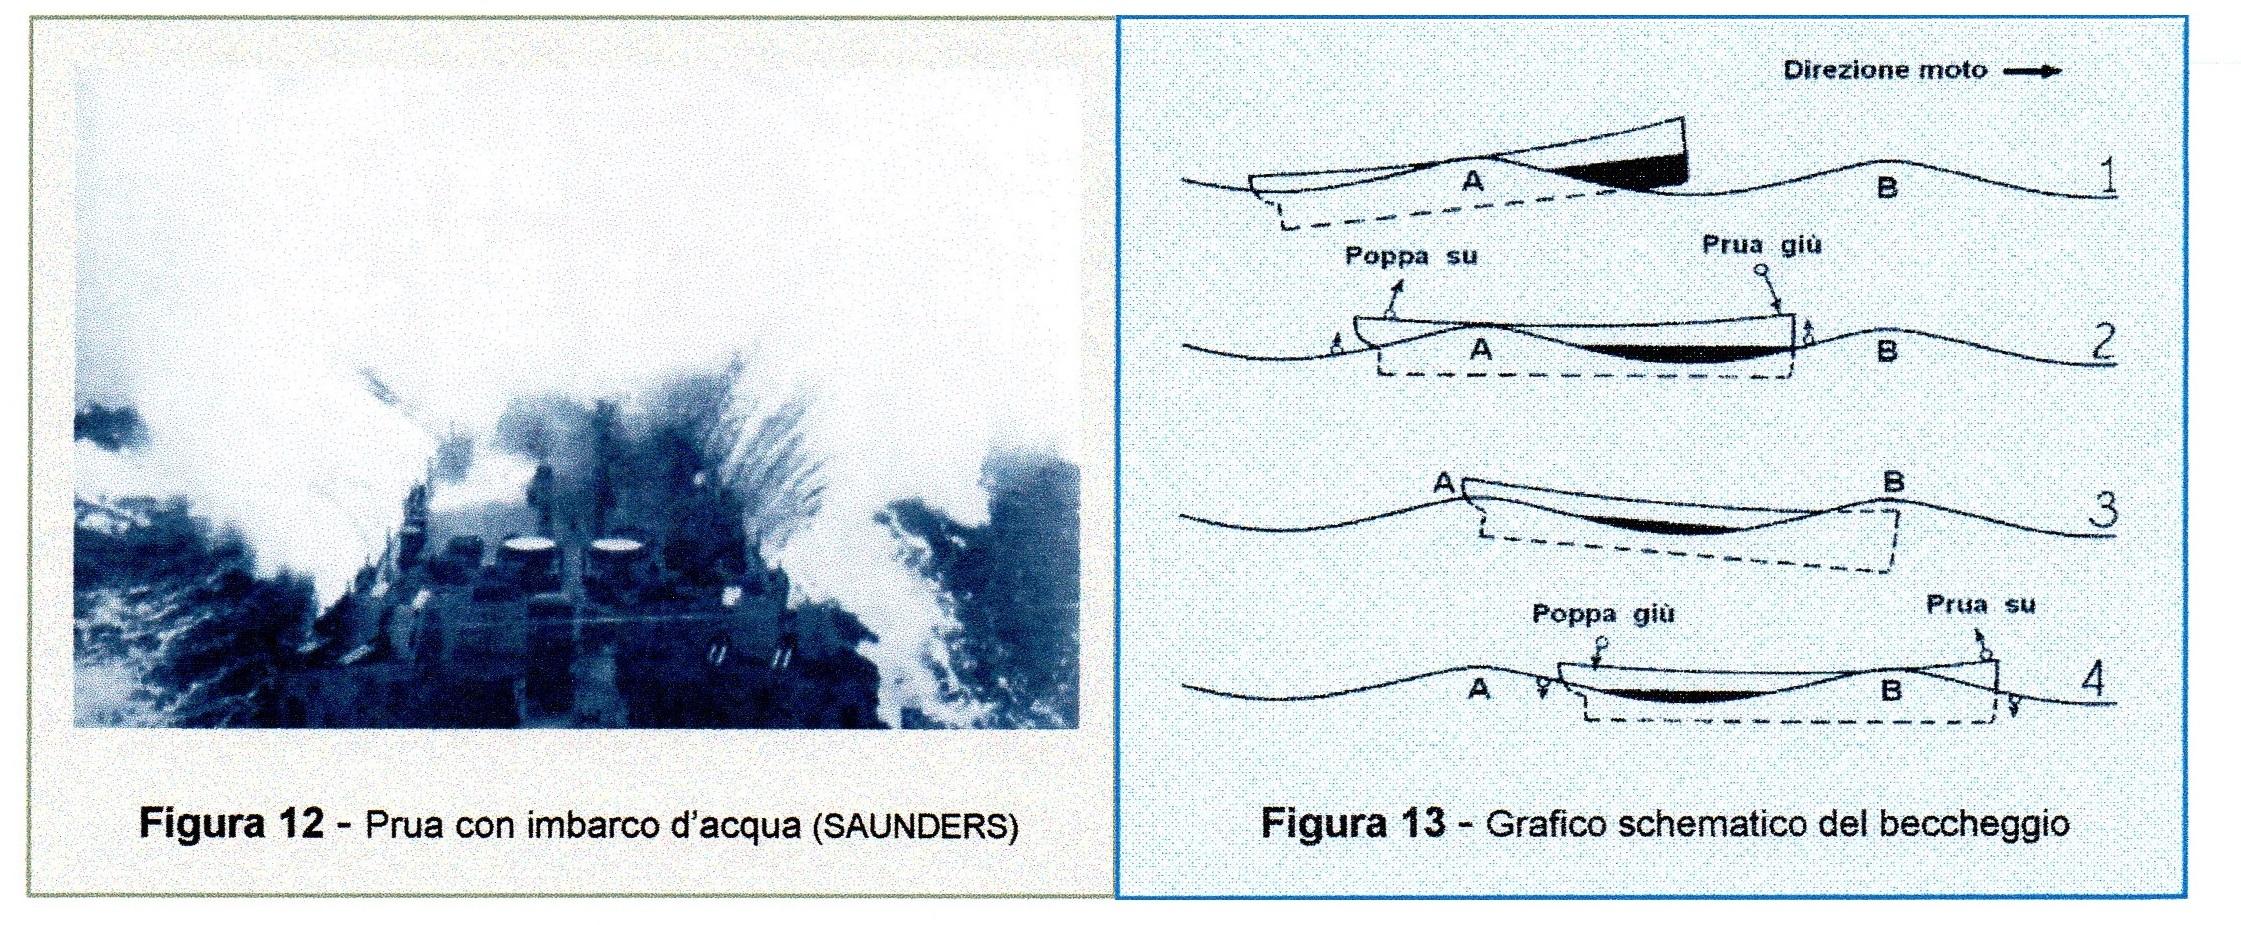 Prua con imbarco d'acqua (SAUNDERS). Grafico schematico del beccheggio.